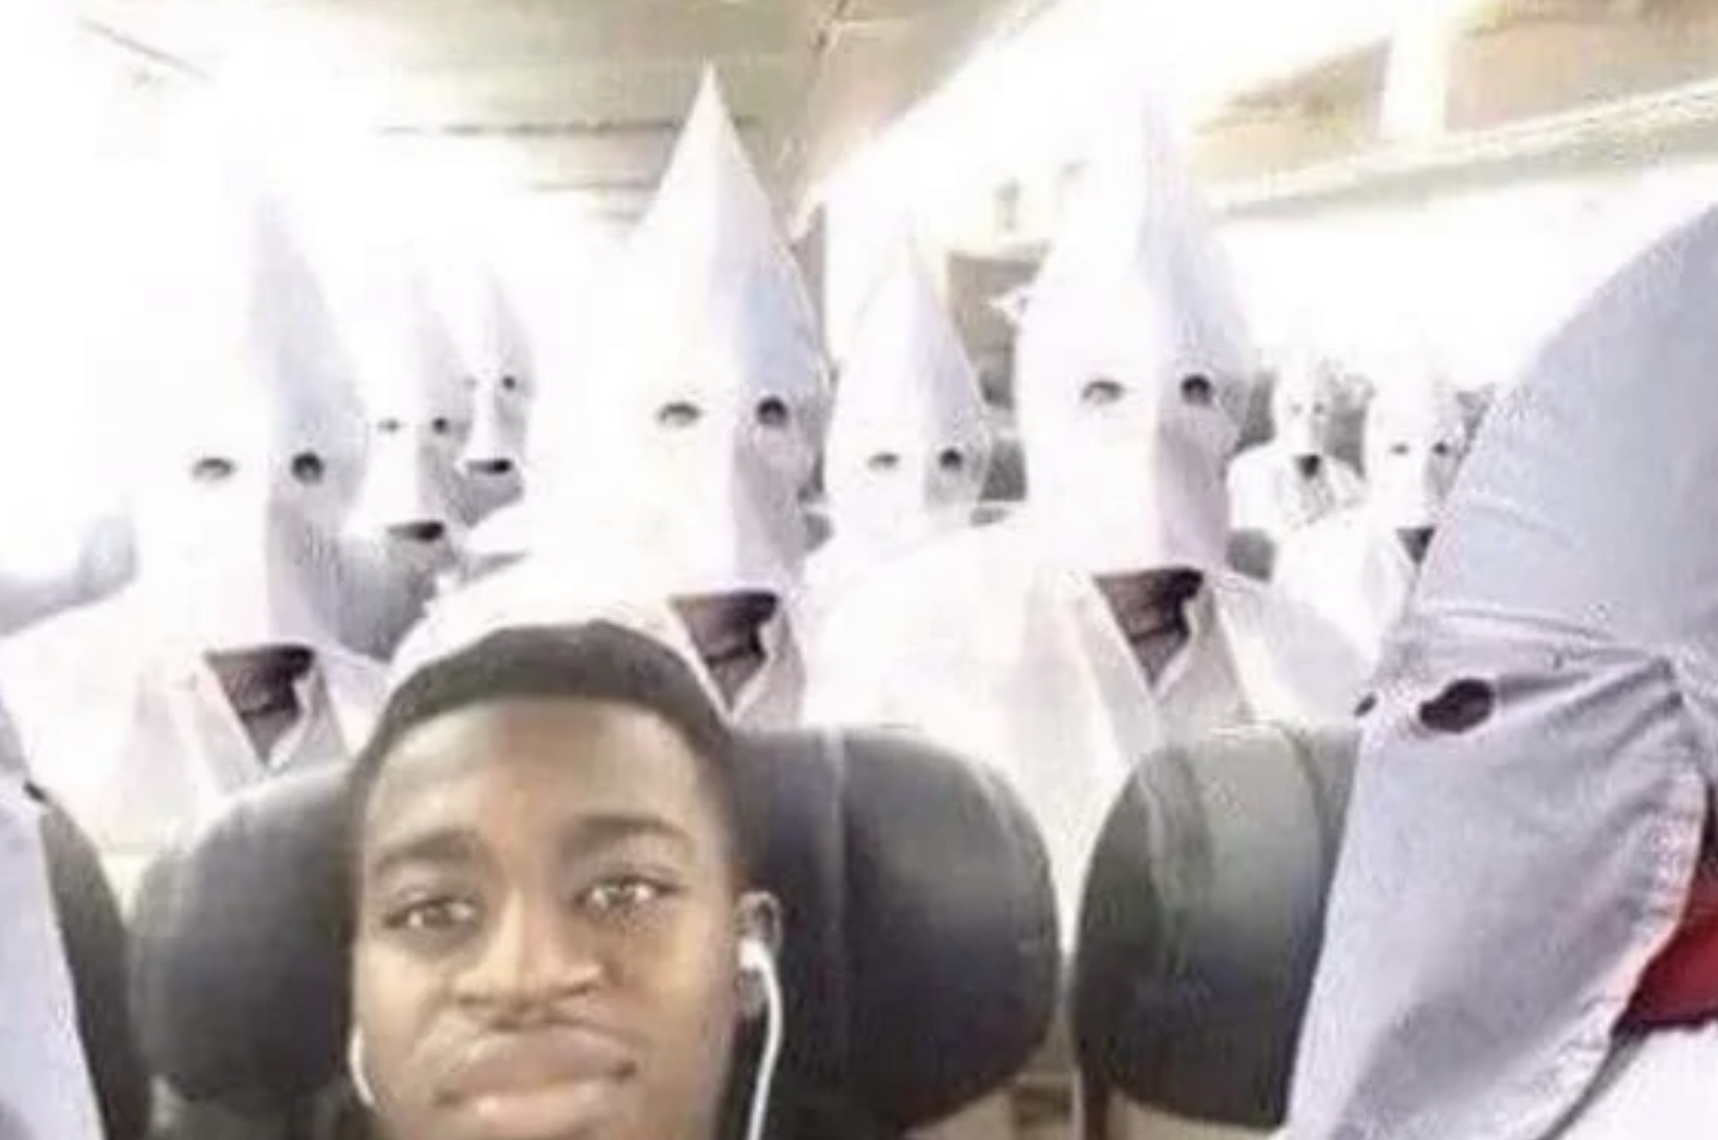 Black guy on kkk flight Blank Meme Template